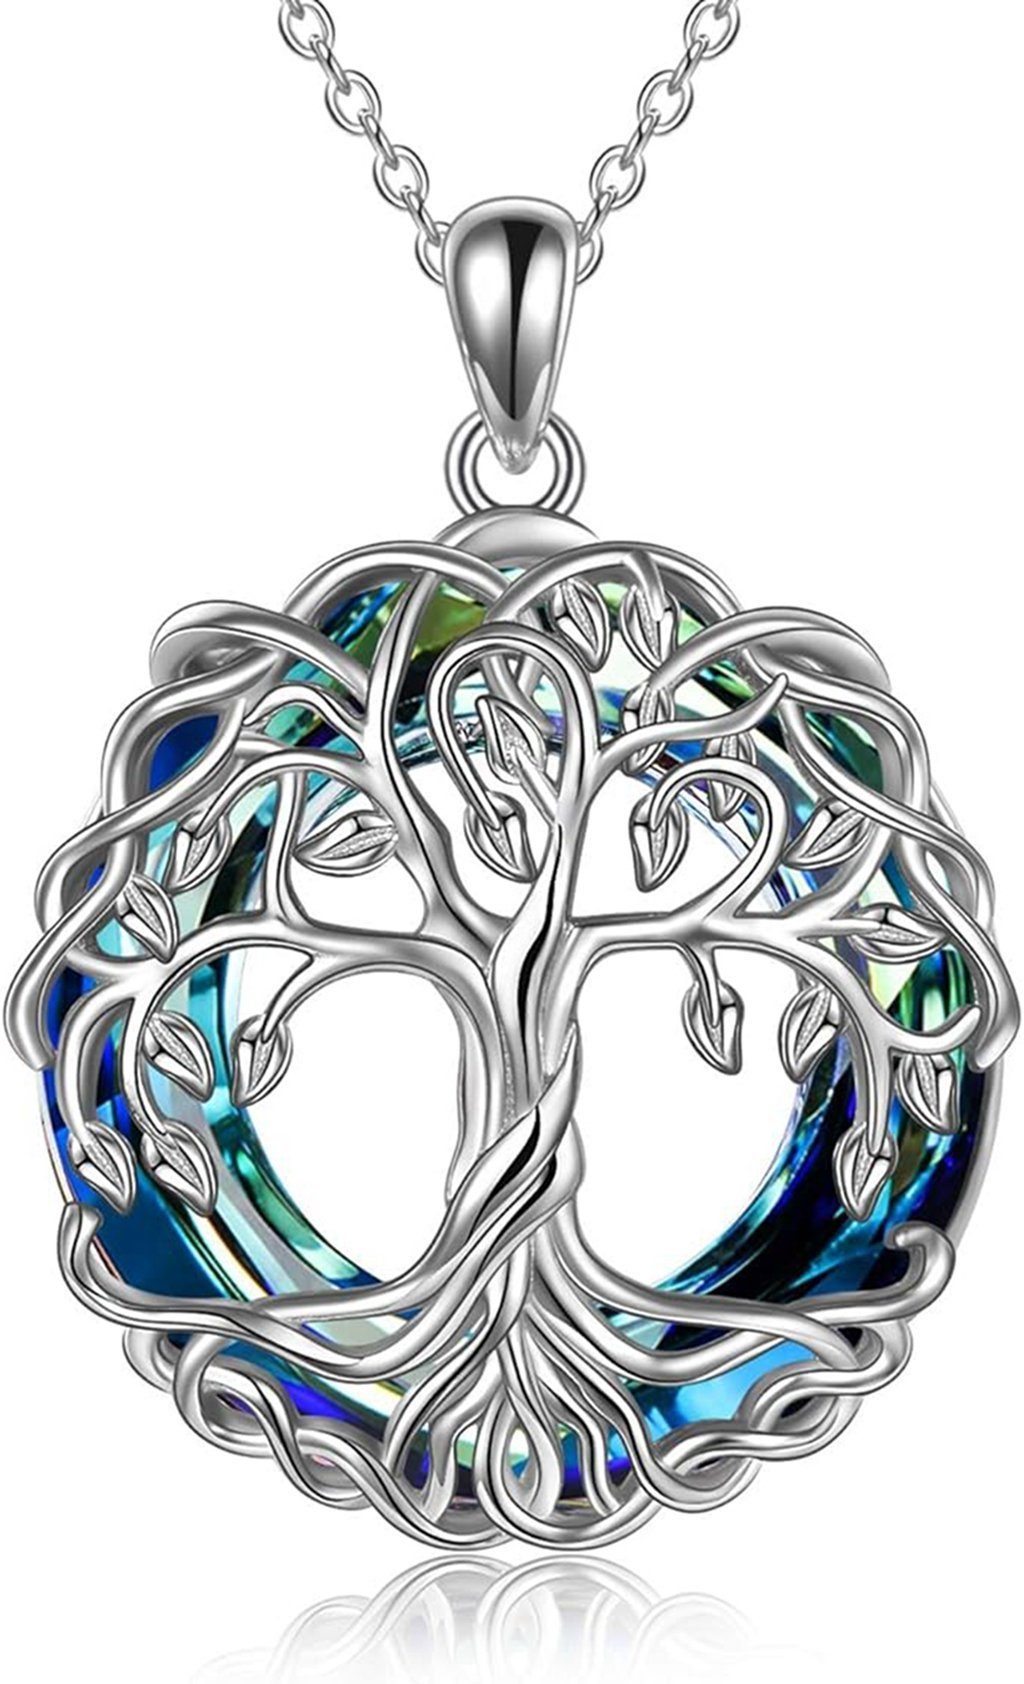 WaKuKa Charm-Kette Lebensbaum-Anhänger-Halskette, Schmuckgeschenk für Frauen Silber